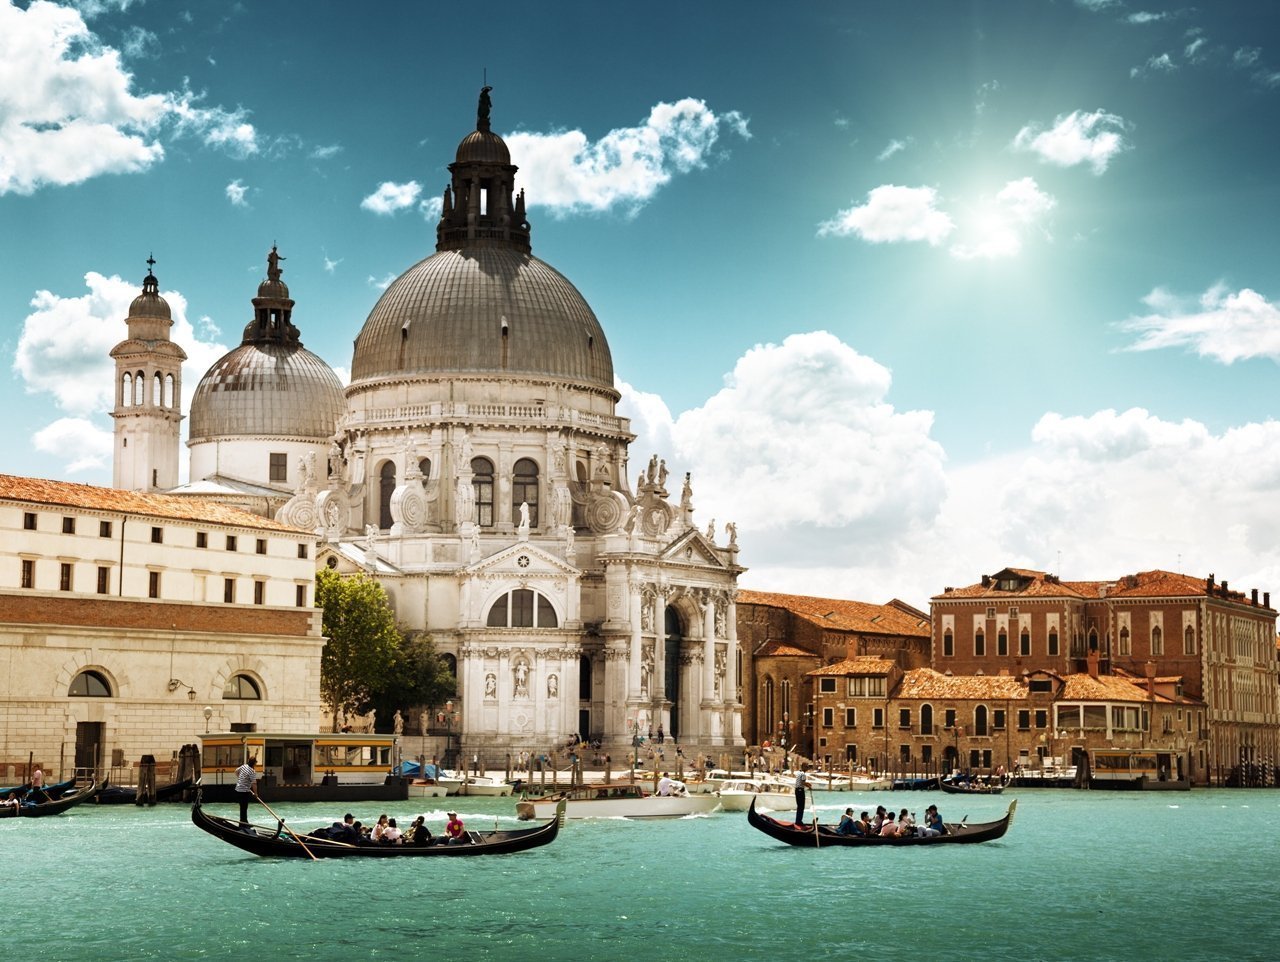 Гранд-канал - это один из самых популярных и известных каналов в Венеции